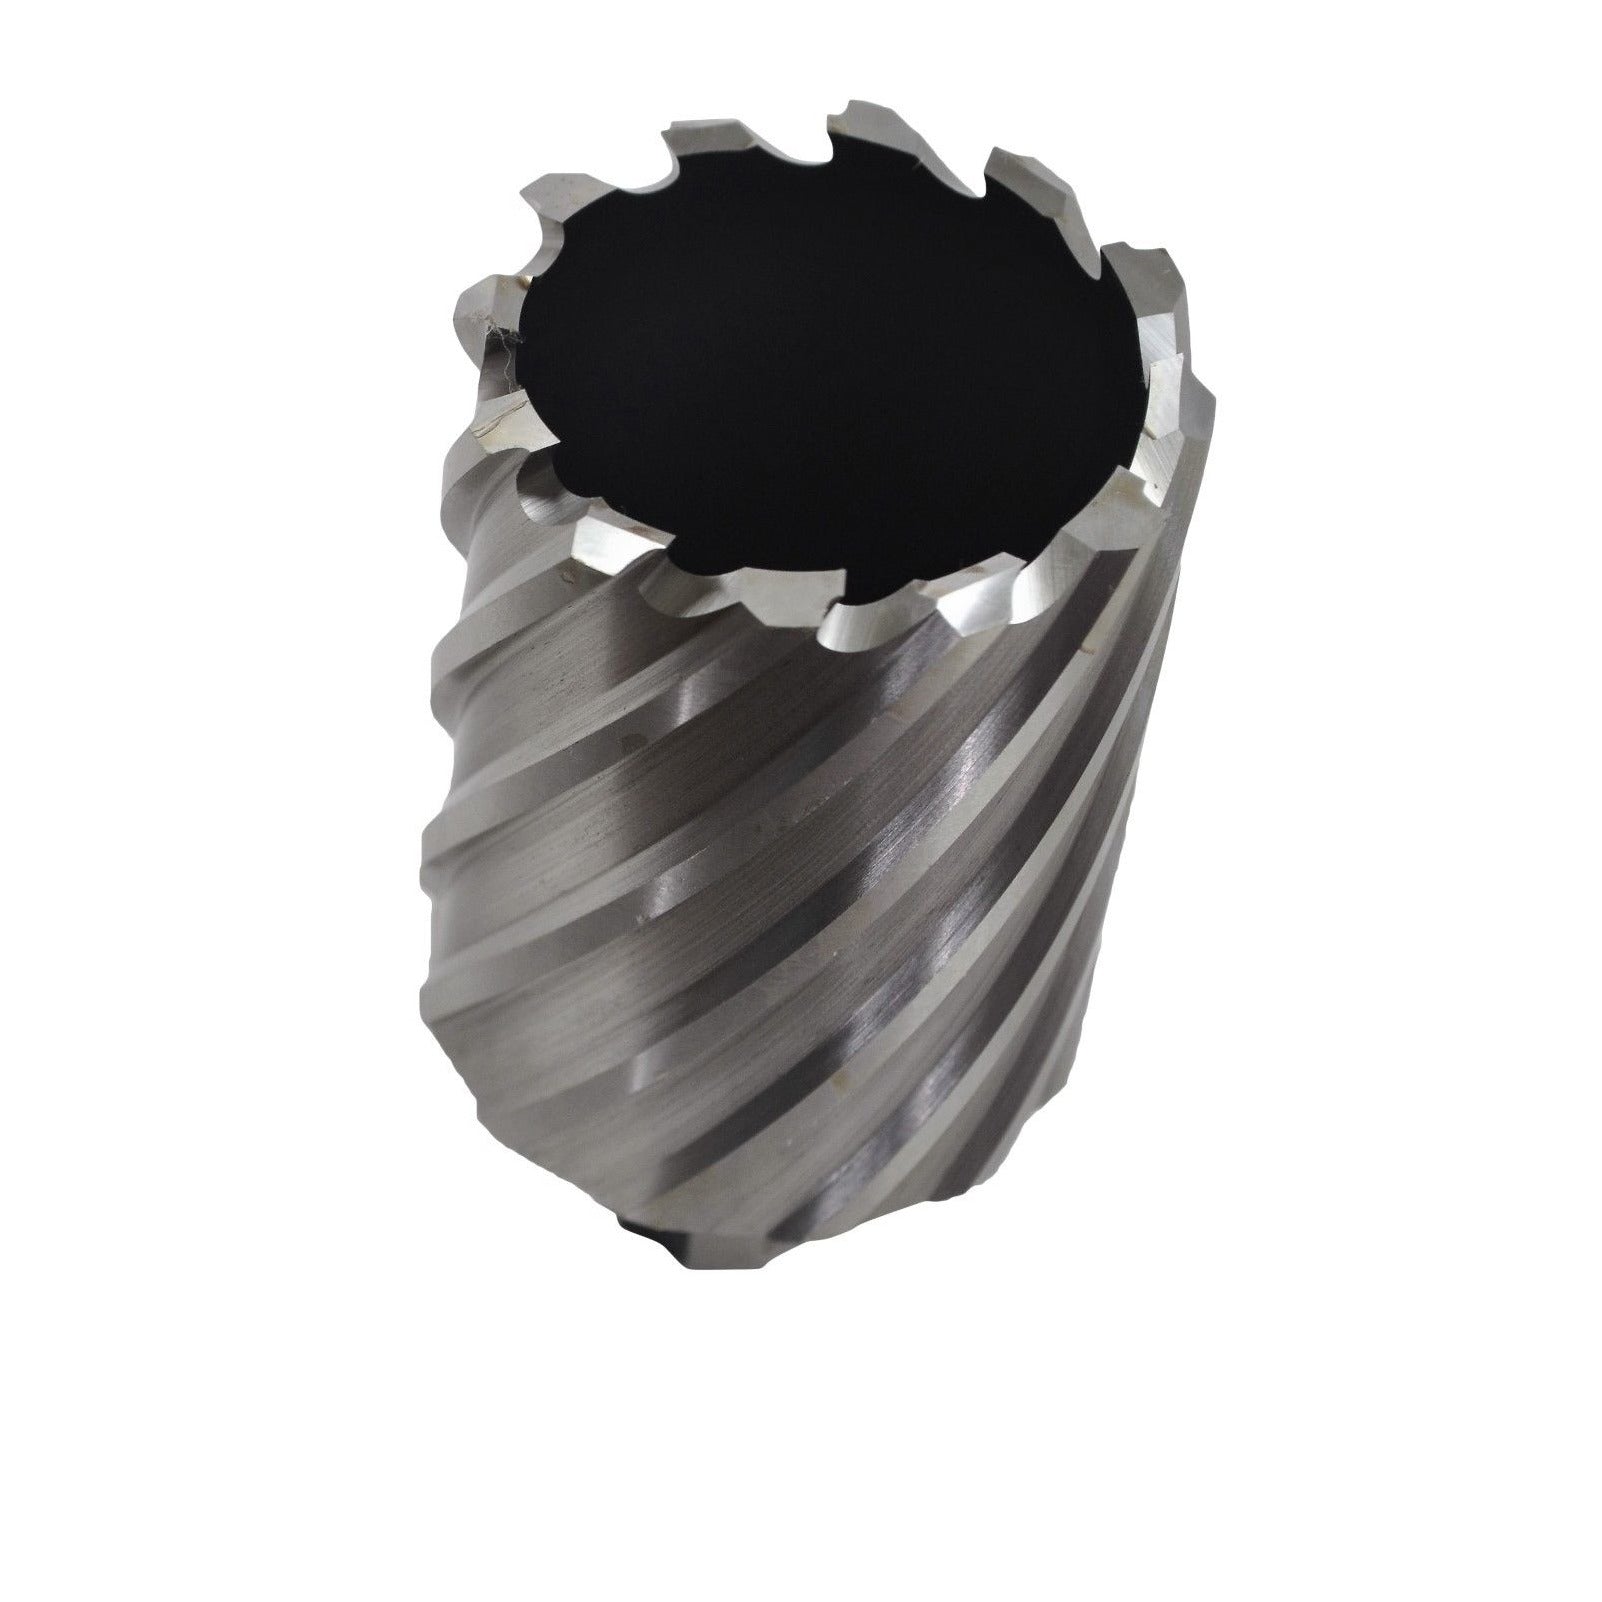 48x50 mm HSS Annular Broach Cutter ; Magnetic Drill ; Rotabroach ; Universal Shank